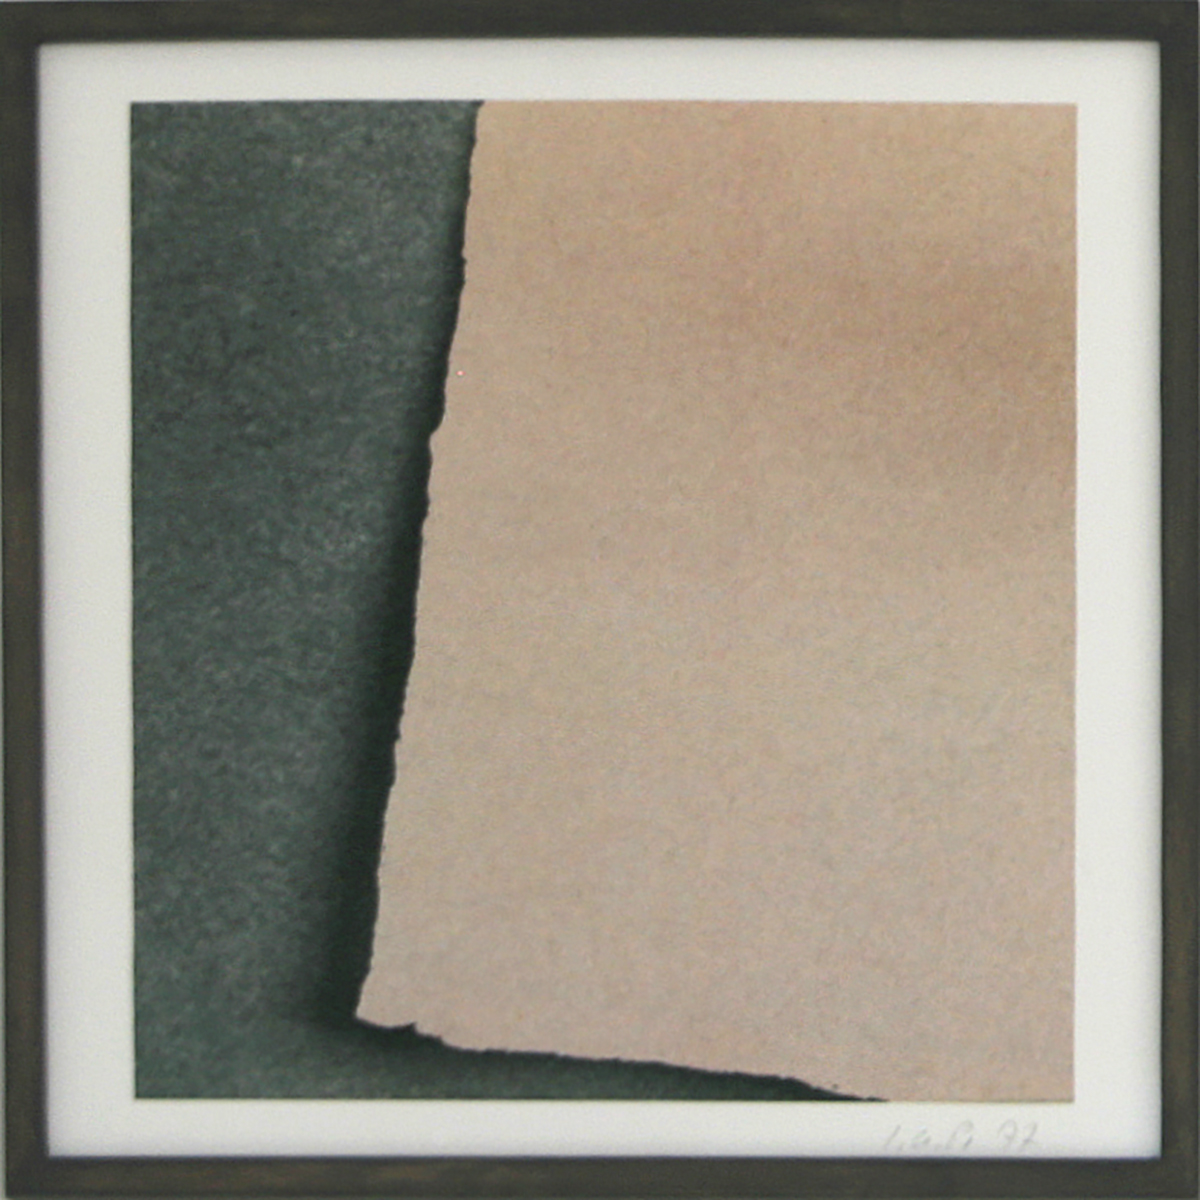 Vergrößerte Funde 3, 1977/201630 x 30 cmausgeschnittenes Papier, Pigmentdruck auf HahnemühleAuflage: 3